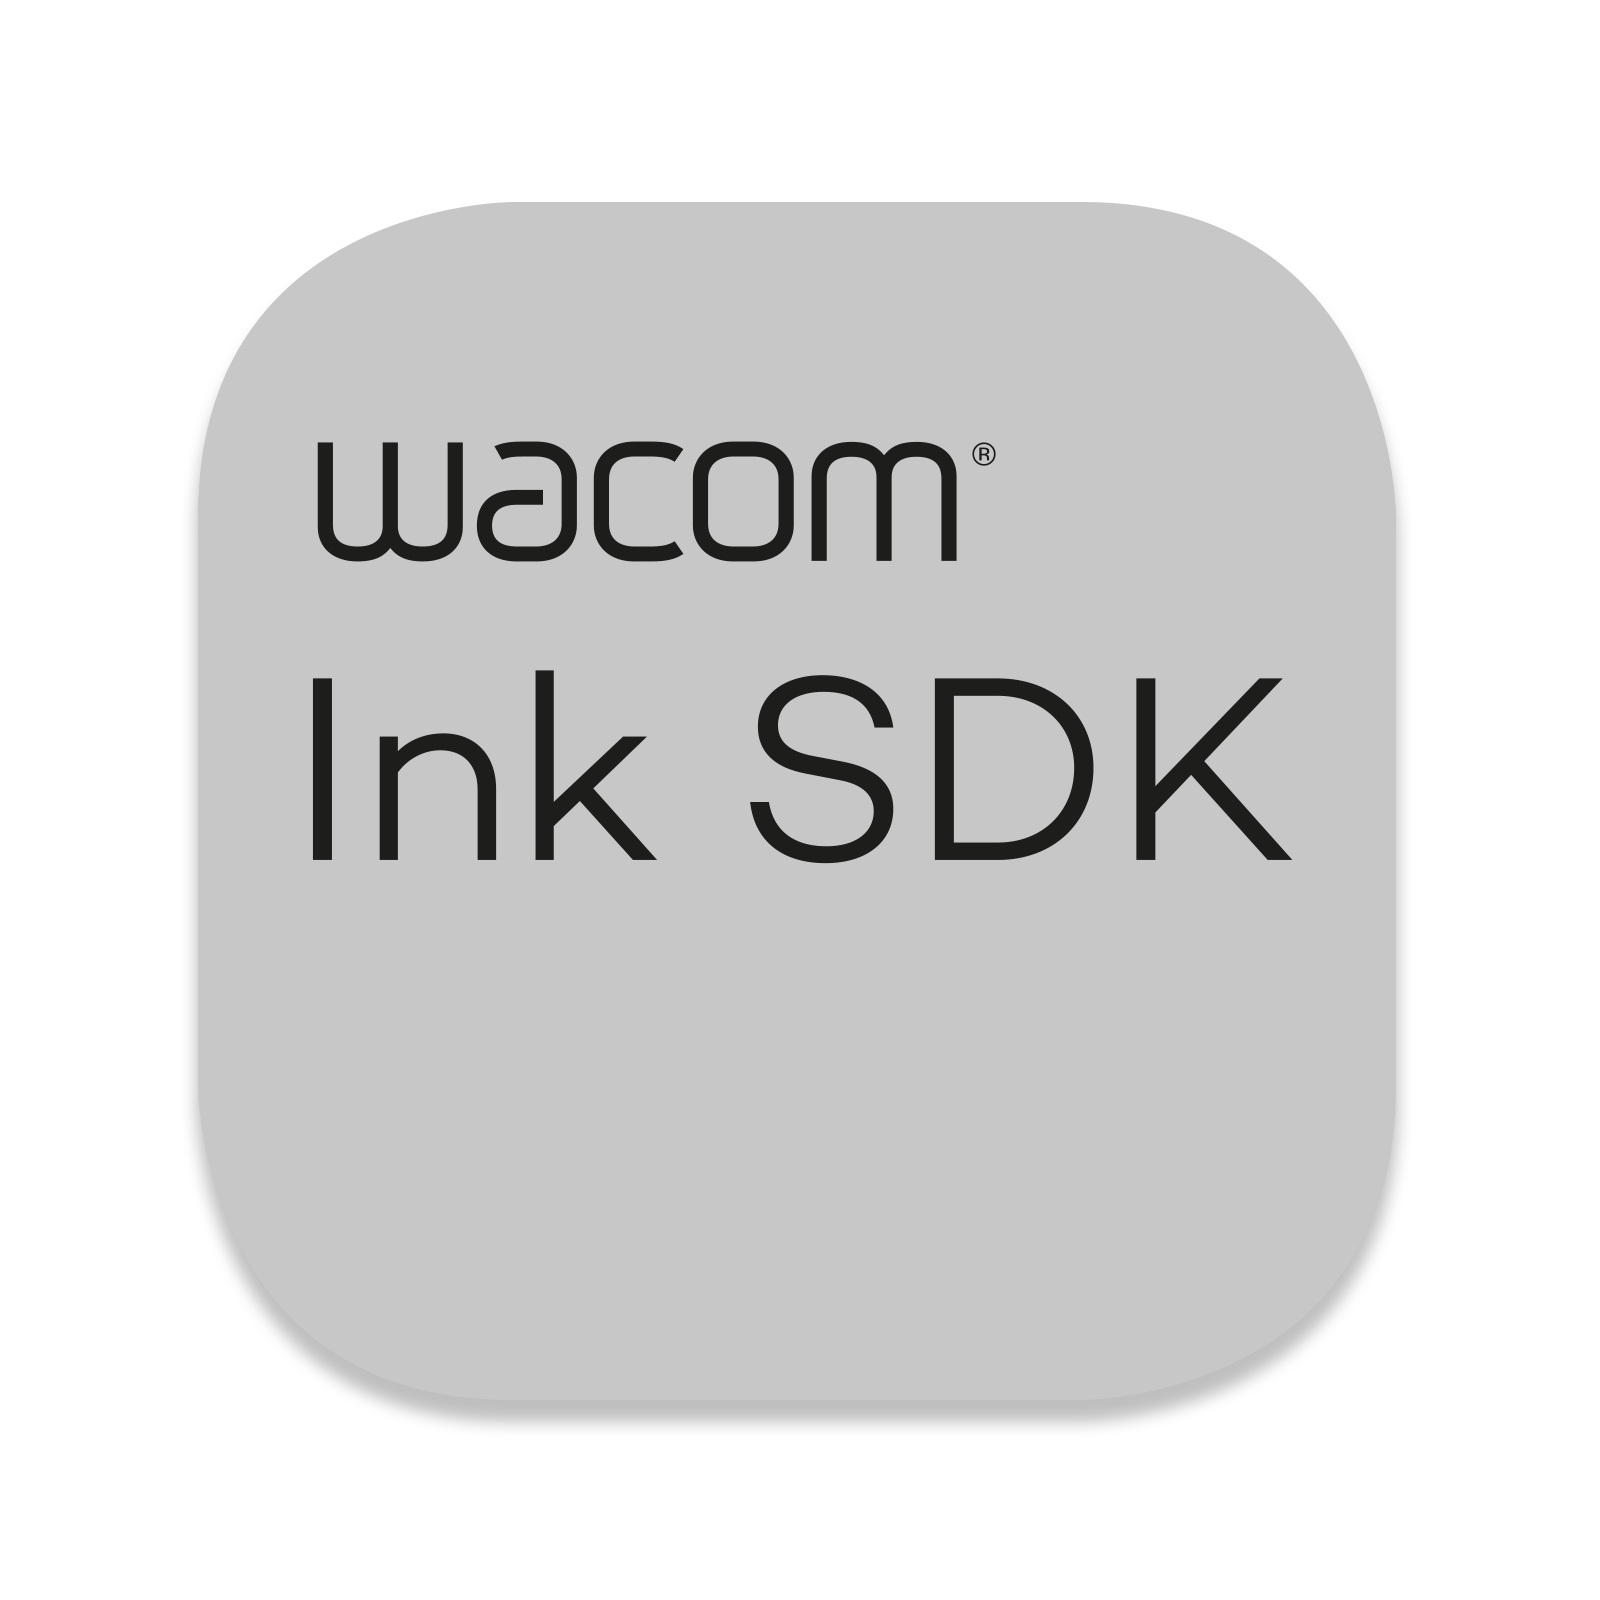 Kits de signature Wacom pour eSignatures manuscrites